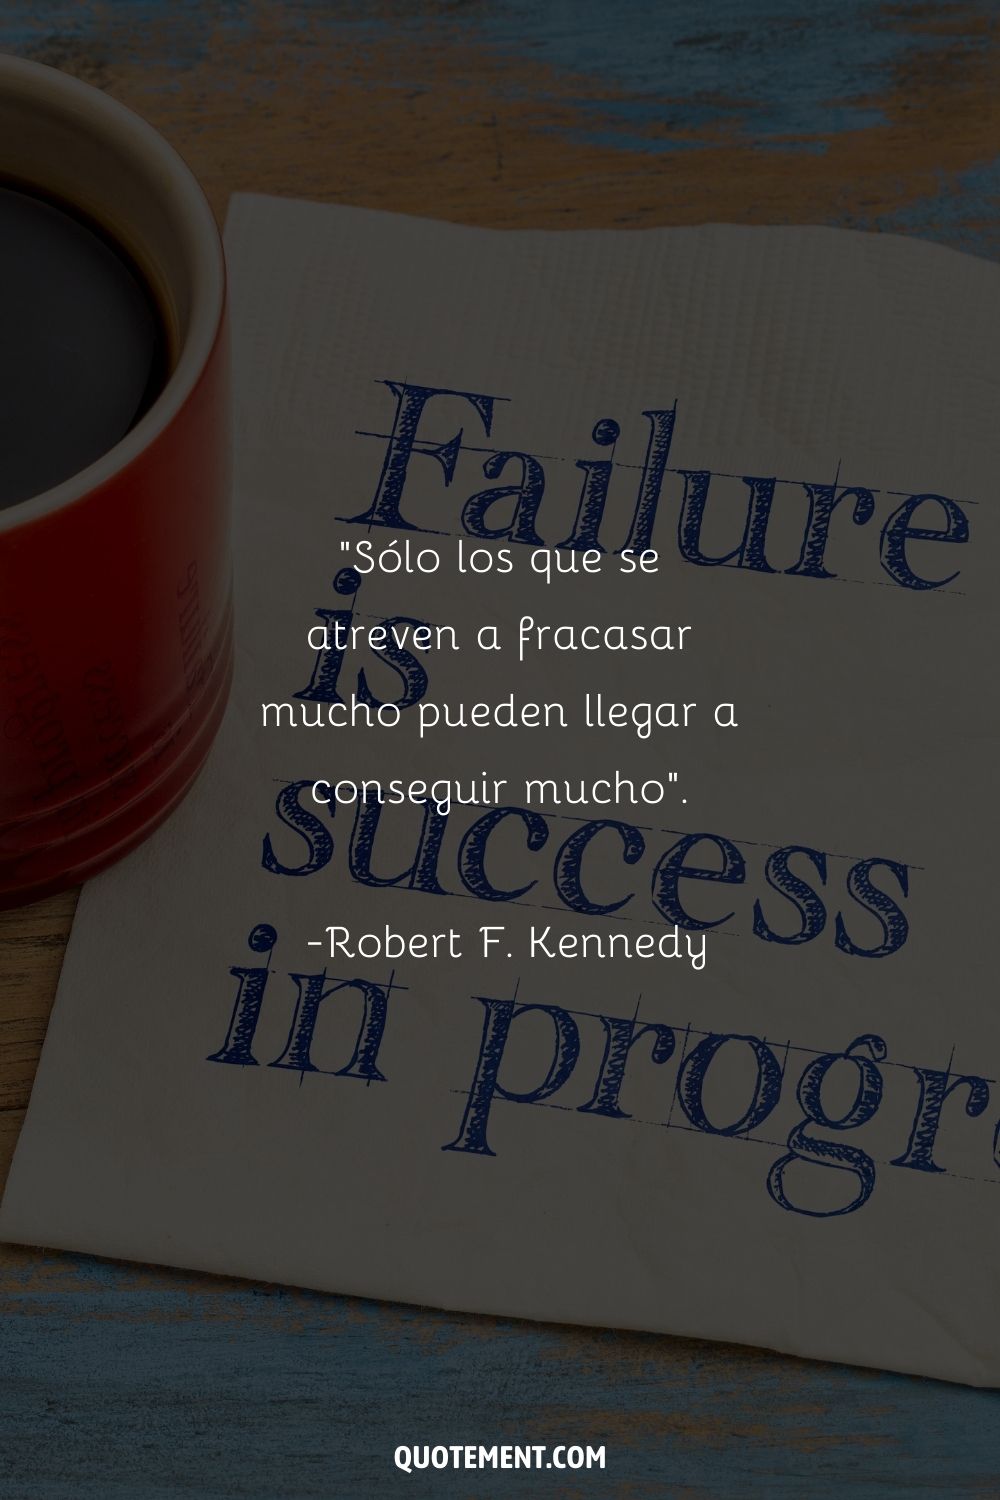 "Sólo aquellos que se atreven a fracasar enormemente pueden alcanzar grandes logros". - Robert F. Kennedy